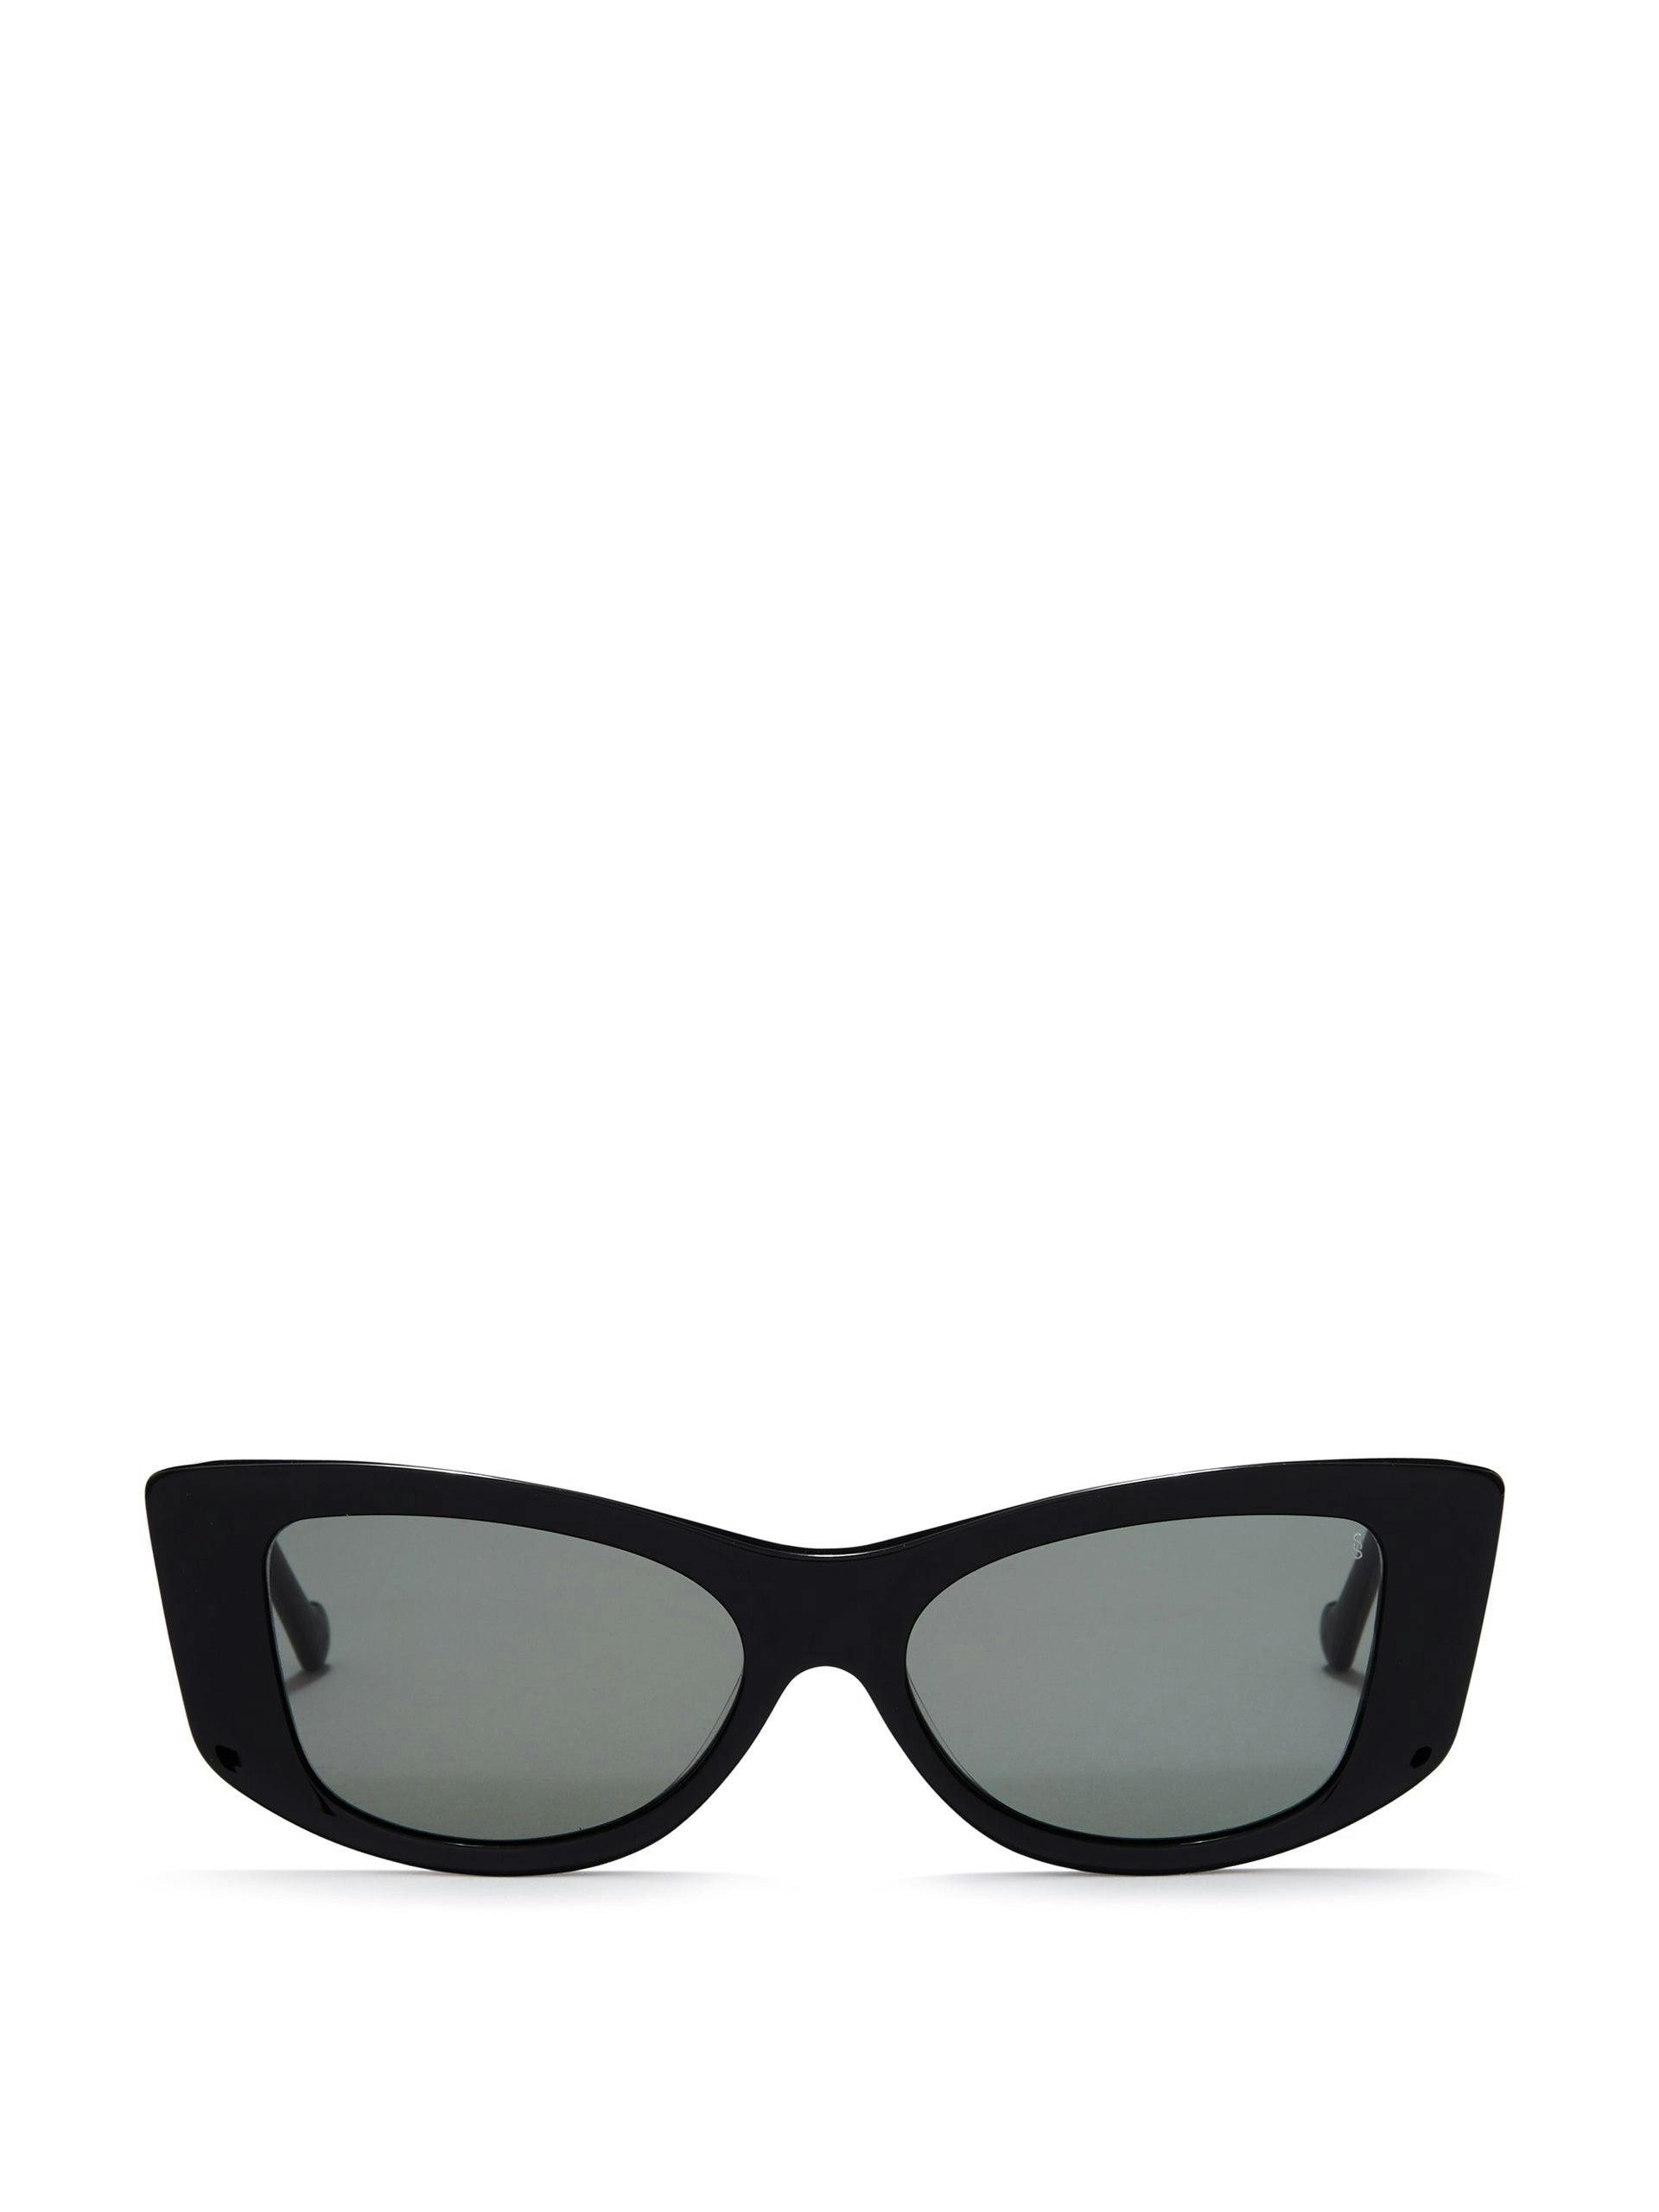 Bella sunglasses in black